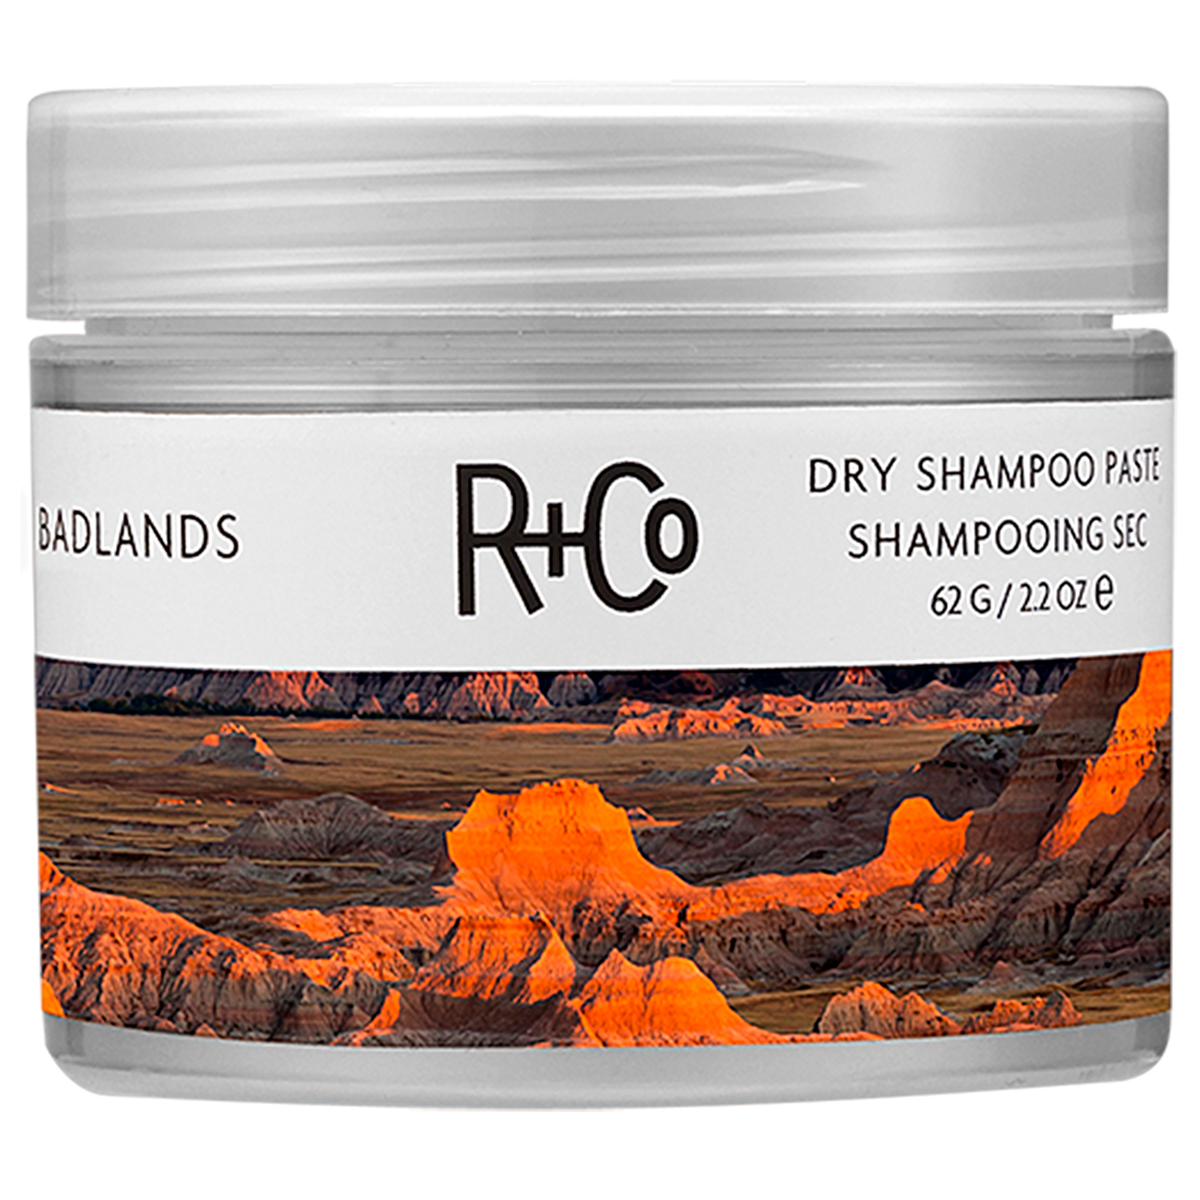 Badlands Dry Shampoo Paste, 62 g R+CO Hårstyling